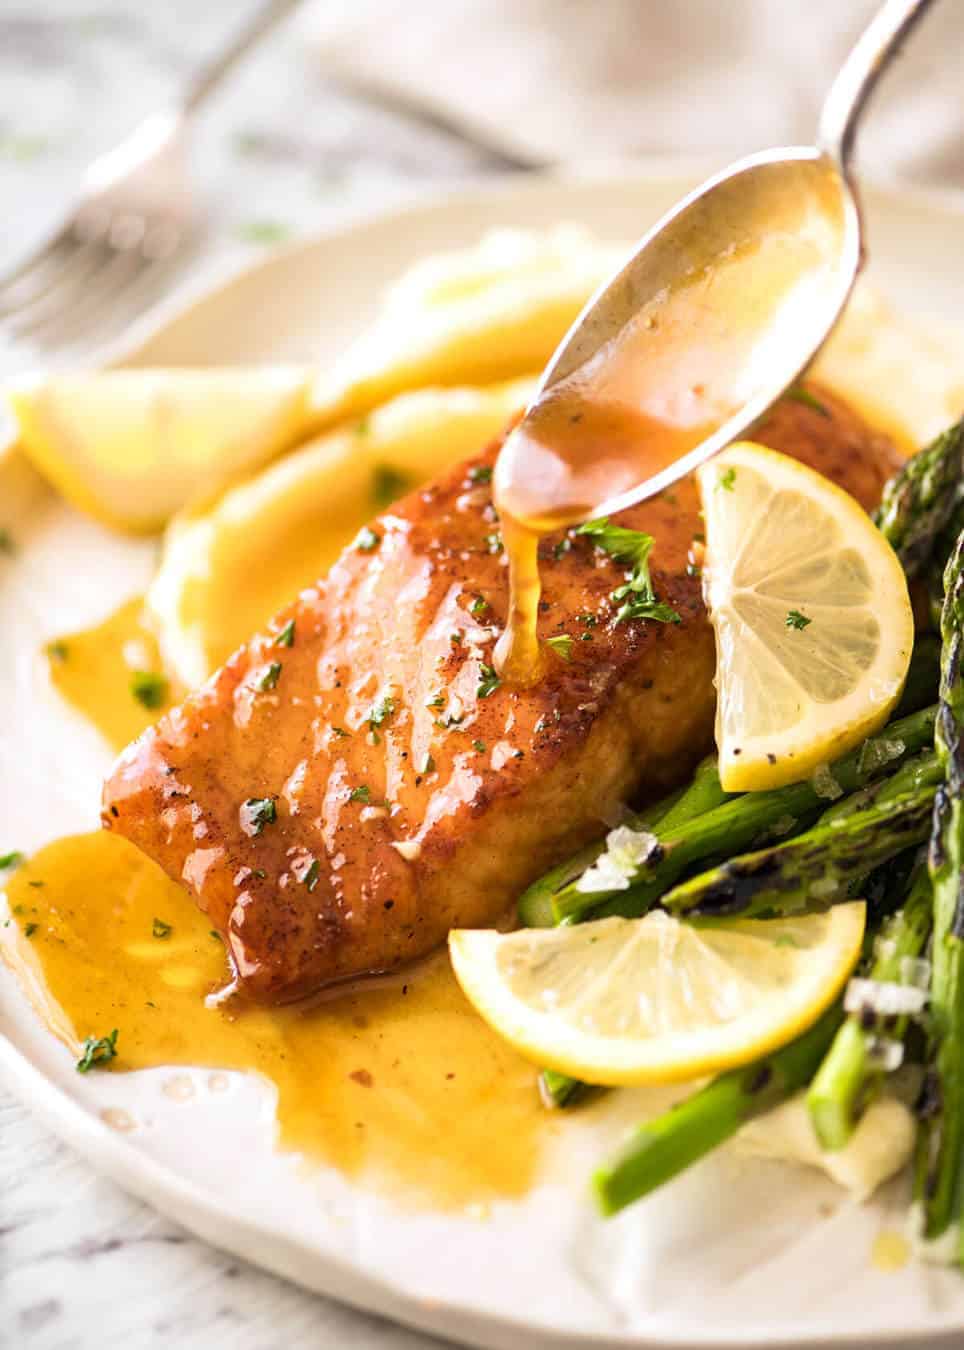 If this Lemon Honey Glazed Salmon takes more than 8 minutes to make, you